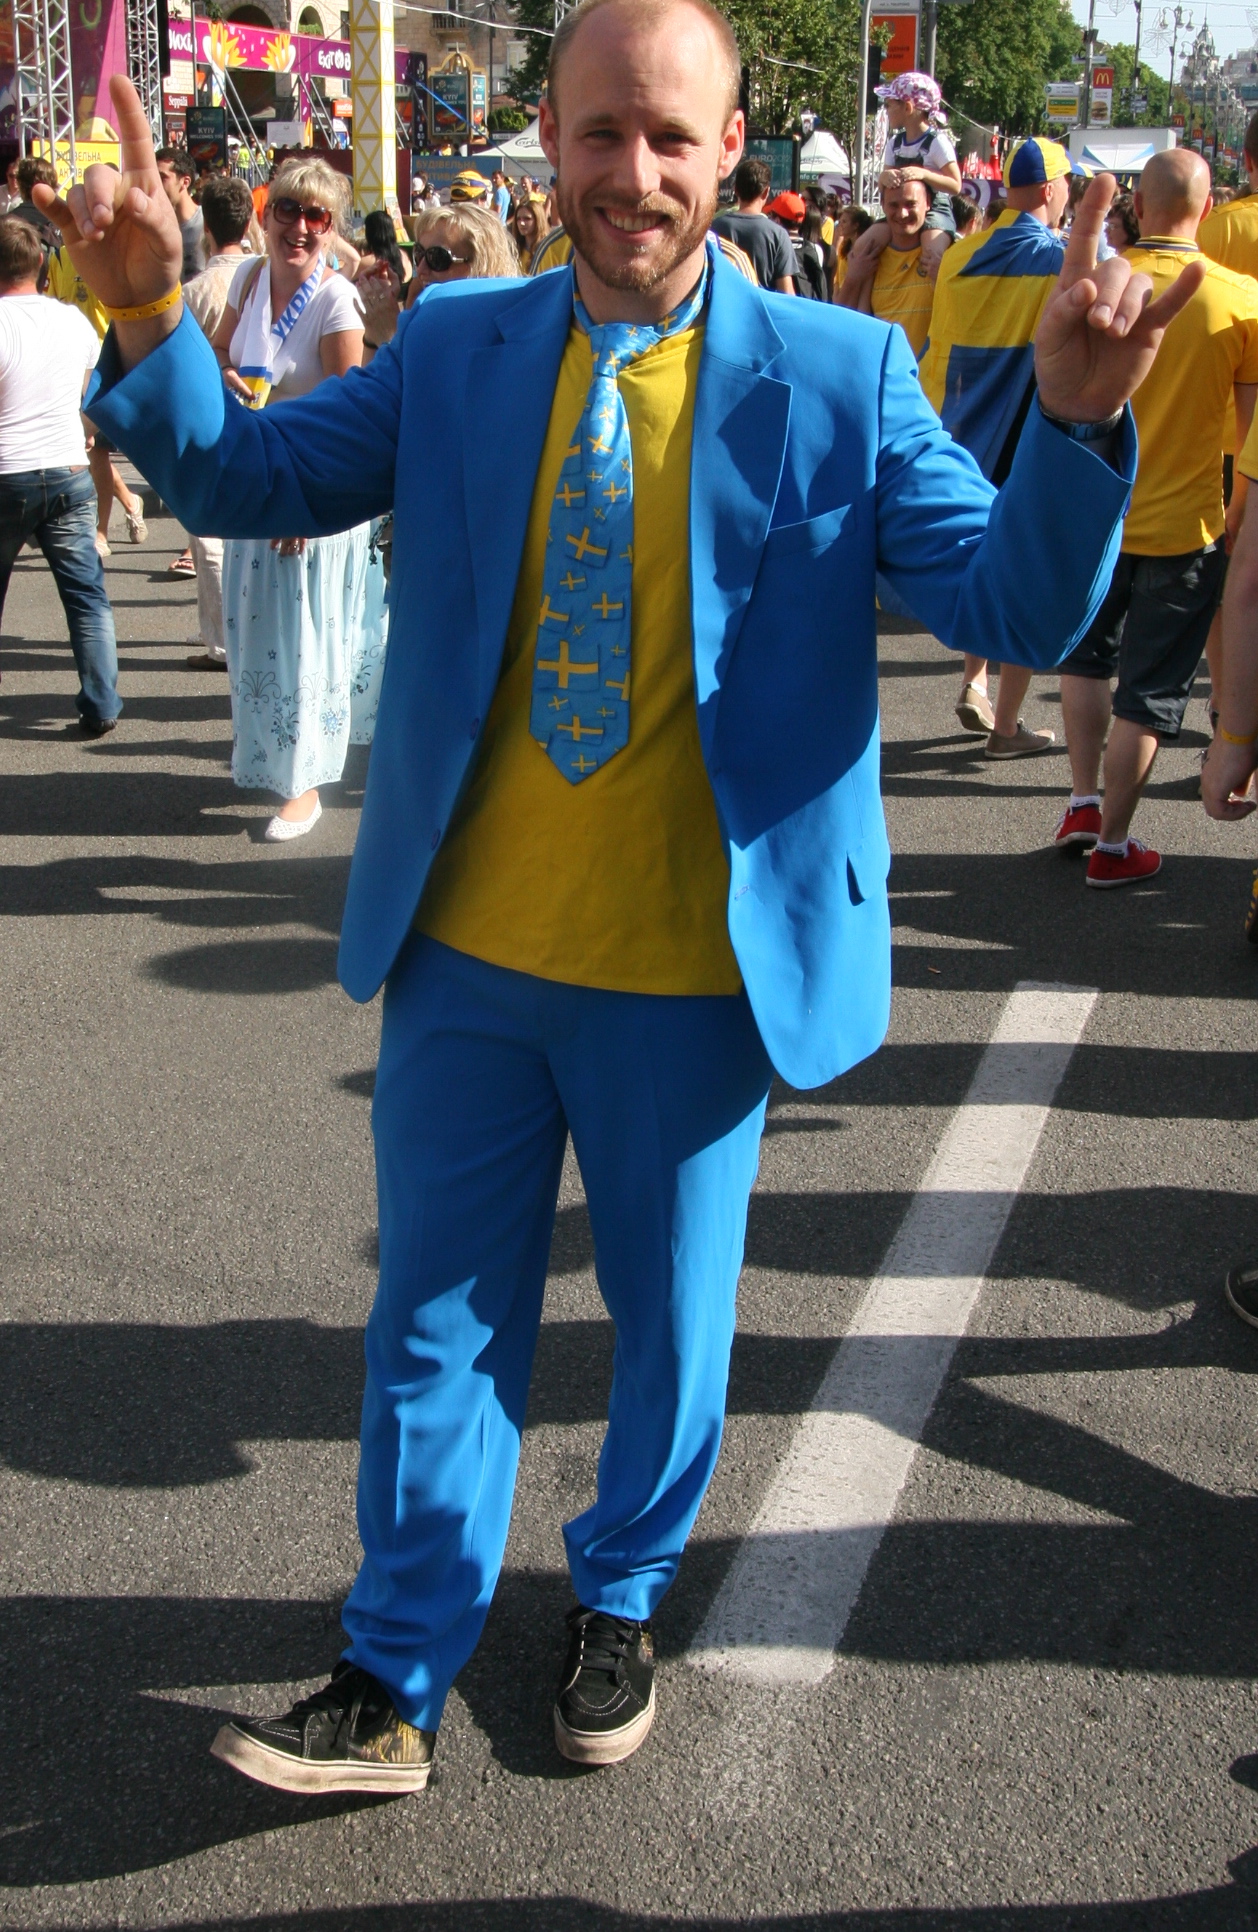 Snyggaste outfiten för dagen bärs av Erik Tidman som tror på 2-0 till Sverige.